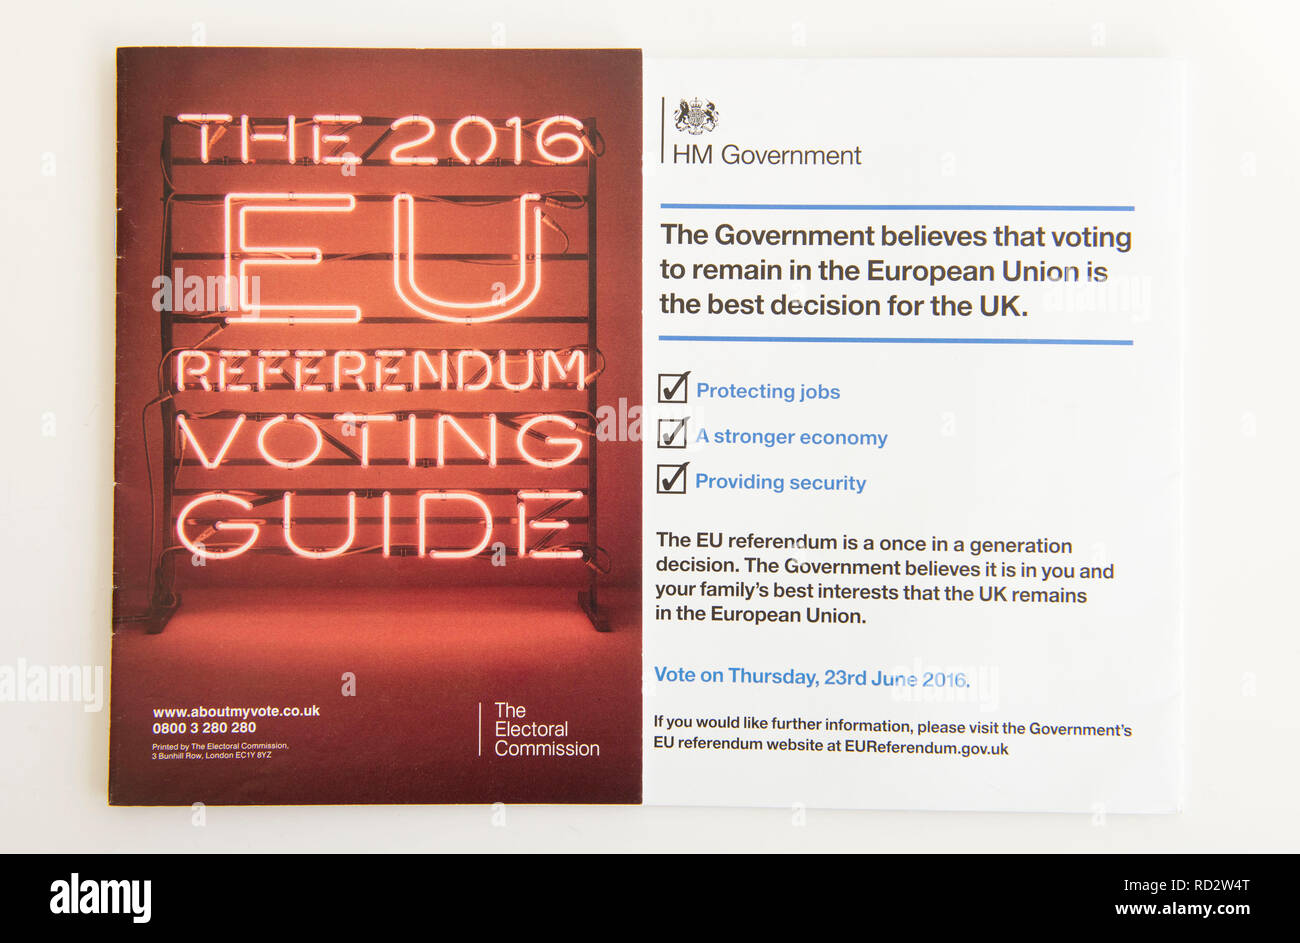 EU Referendum 2016 folletos producidos por el Gobierno británico y la Comisión Electoral antes de la votación Brexit el 23 de junio de 2016. Foto de stock